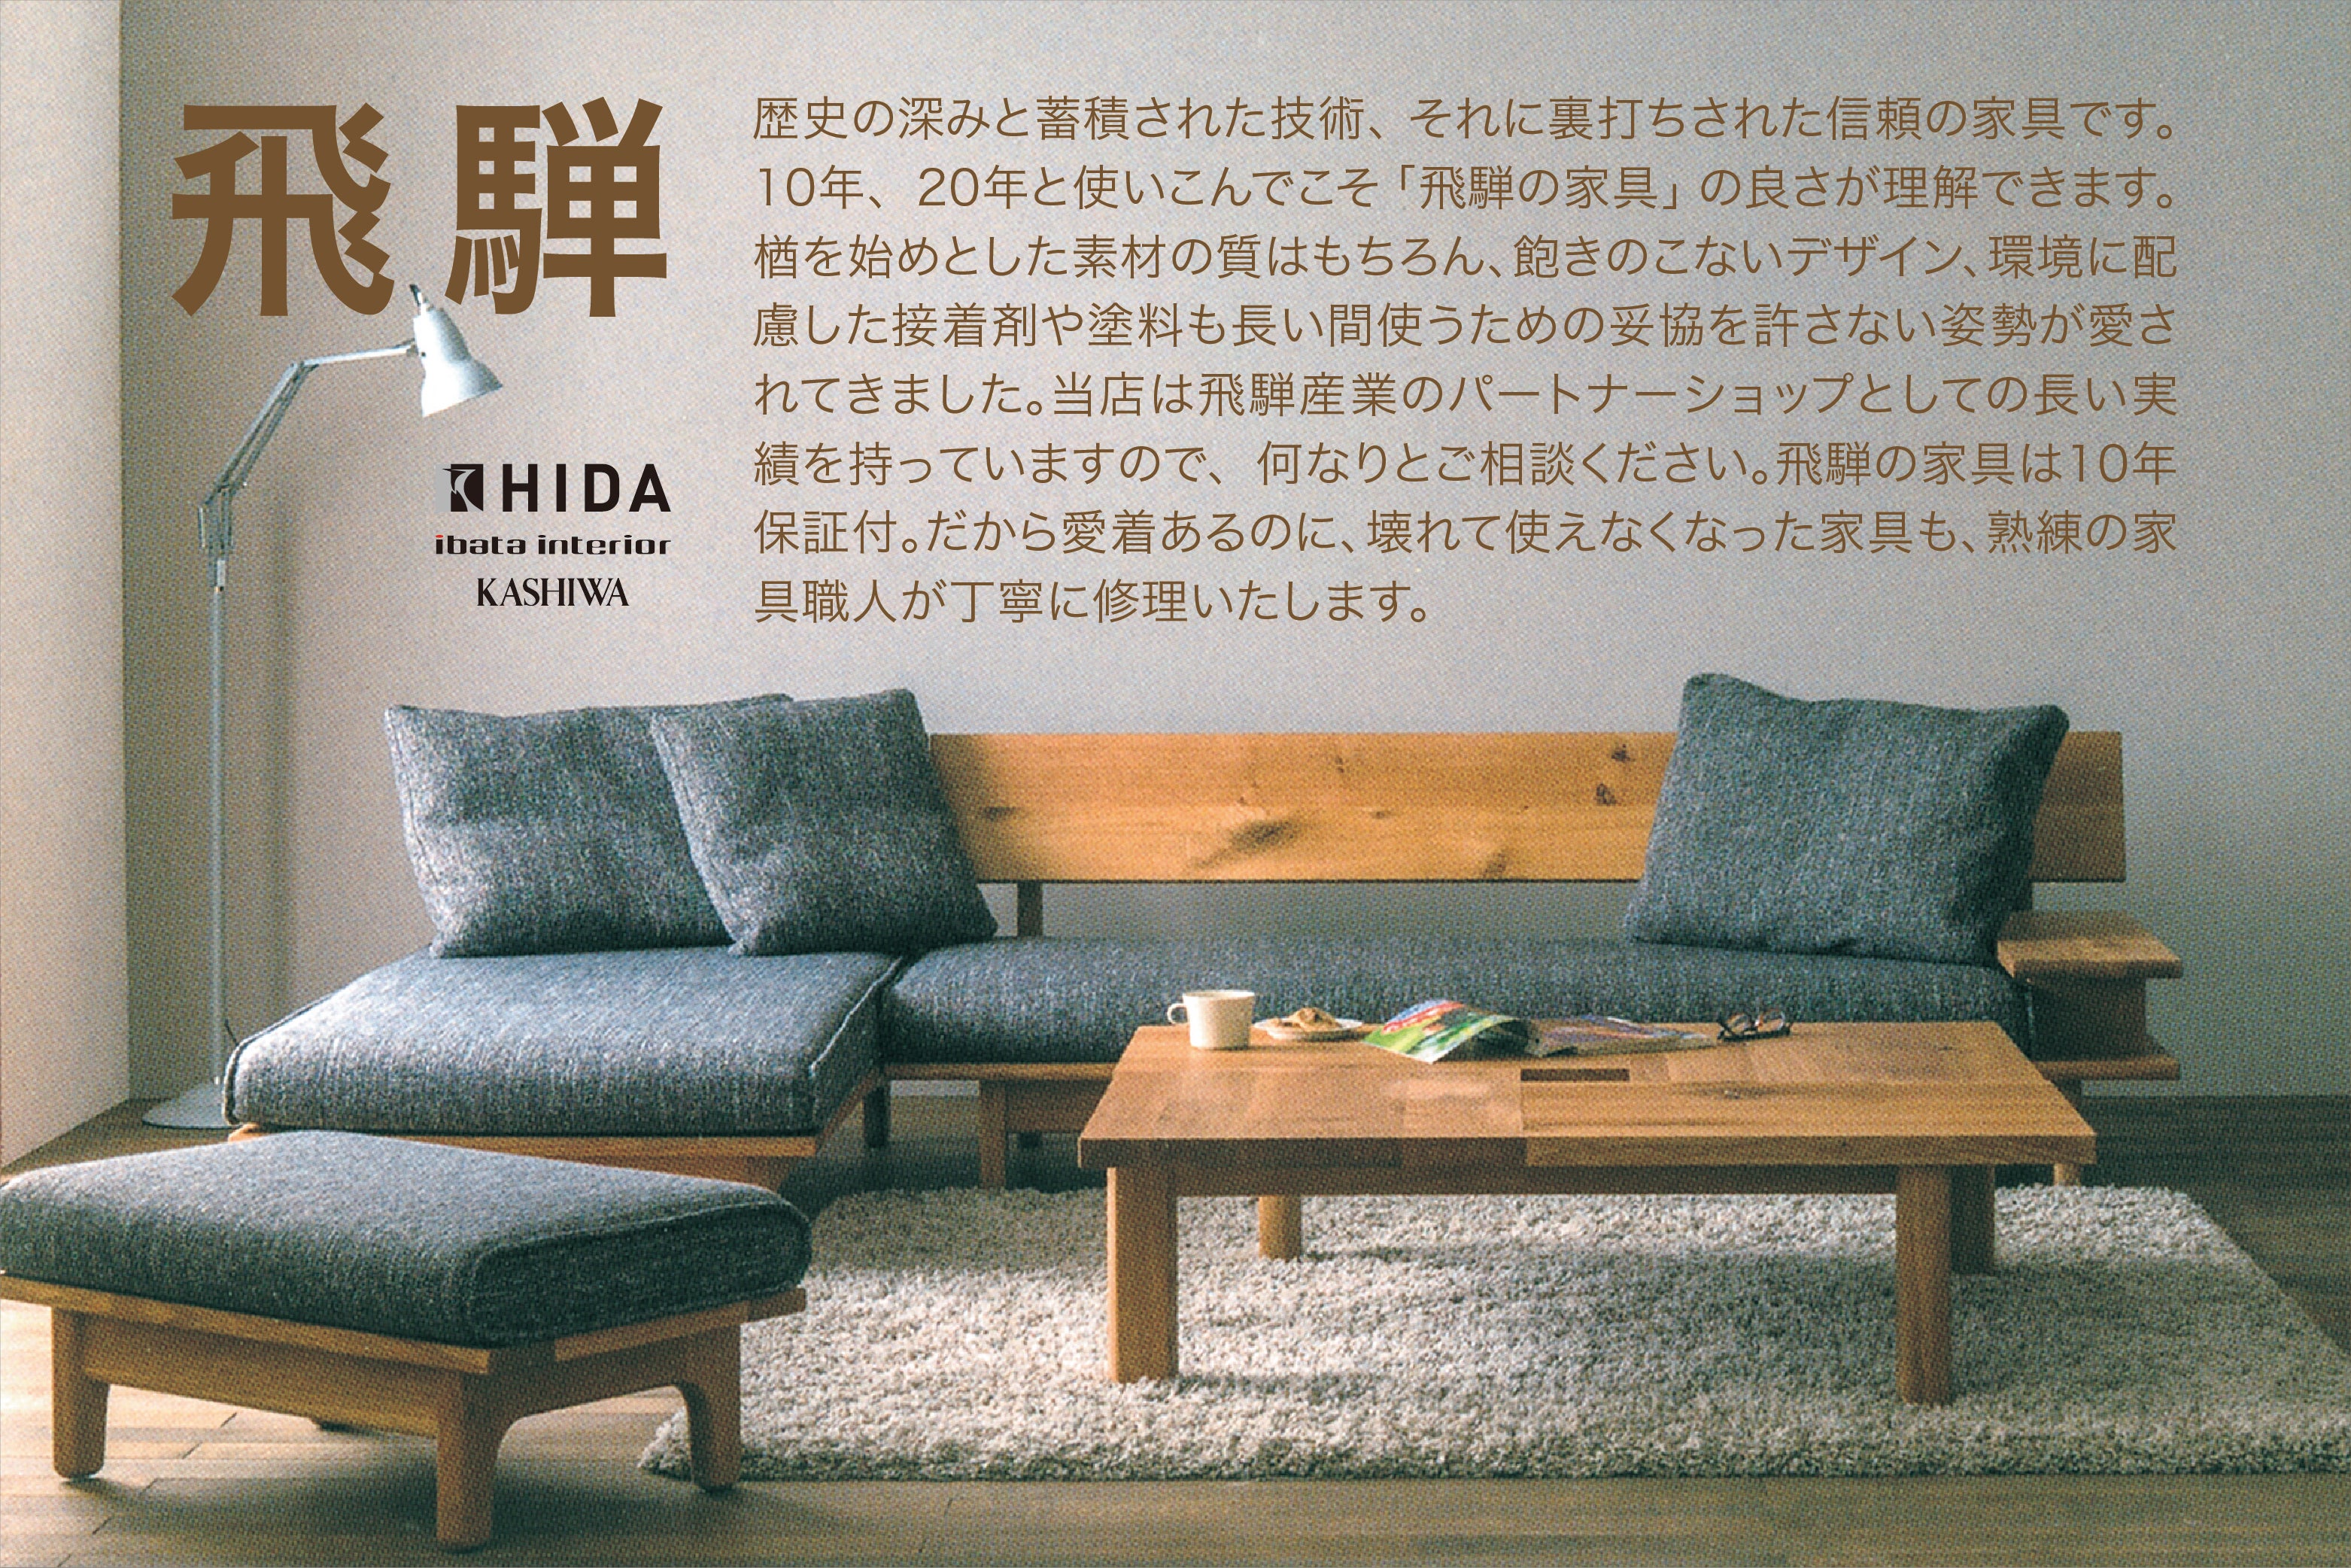 伝統と高い技術力で人気の<飛騨高山>の家具がたくさんならびます。